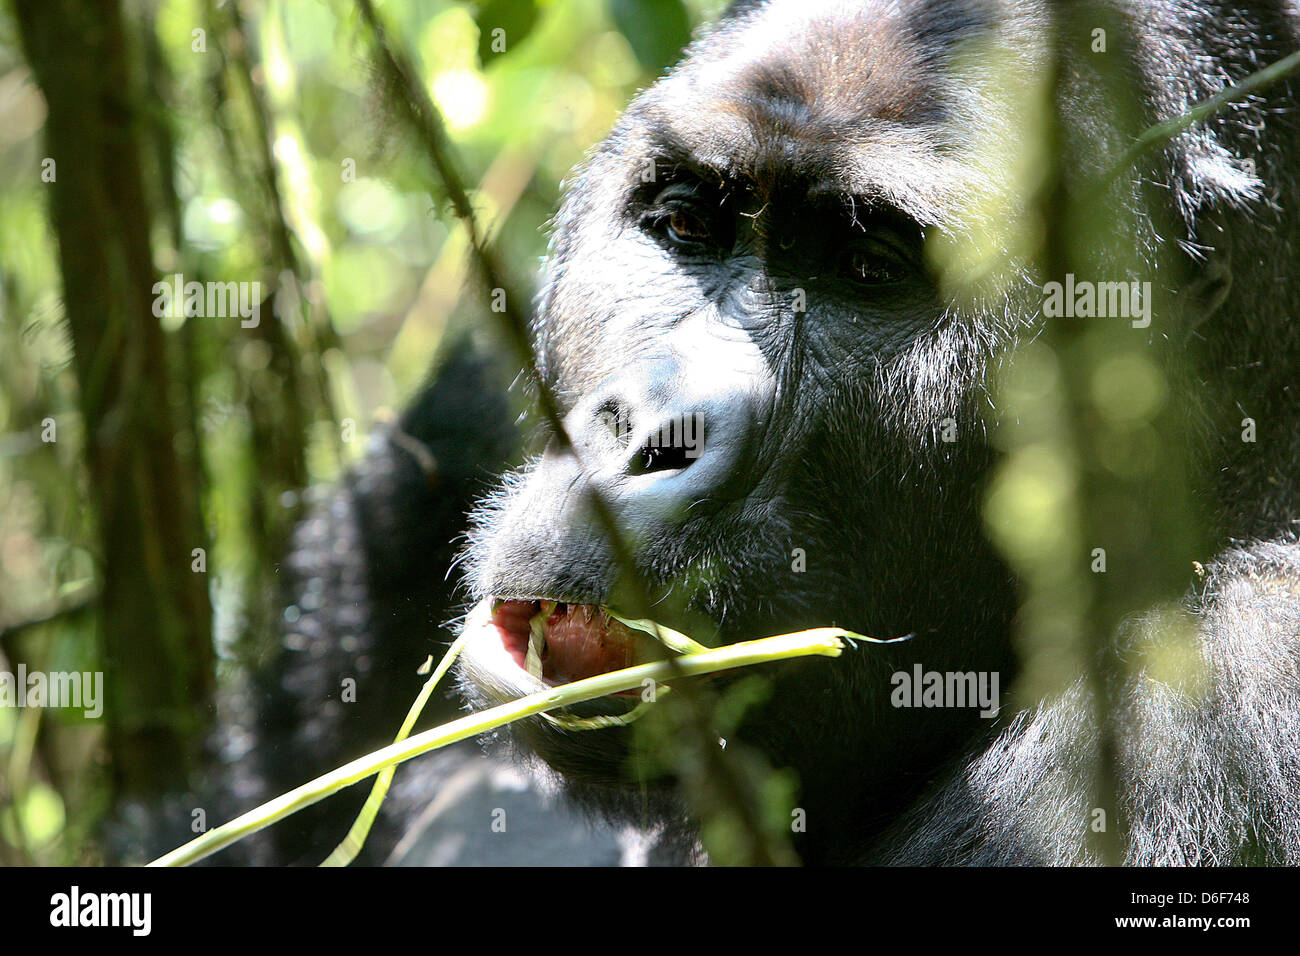 Quest'anno, il tedesco per lo sviluppo della banca (KfW ) assumerà il finanziamento dell'Kahuzi-Biega Parco Nazionale al confine della Repubblica Democratica del Congo Ruanda. In questo parco sul lato congolese sono attualmente nove gorilla di montagna i gruppi presenti, che attualmente significa un totale di 139 animali. Questi gruppi vivono su circa 600.000 ettari di area forestale - che rende solo un decimo del totale del Parco Nazionale, che è attualmente controllata. Prima dell'ultimo focolaio di una guerra con il Ruanda vi era di circa 10.000 vivono i gorilla di montagna. Molti di loro sono stati uccisi nel corso degli anni da parte di persone Foto Stock